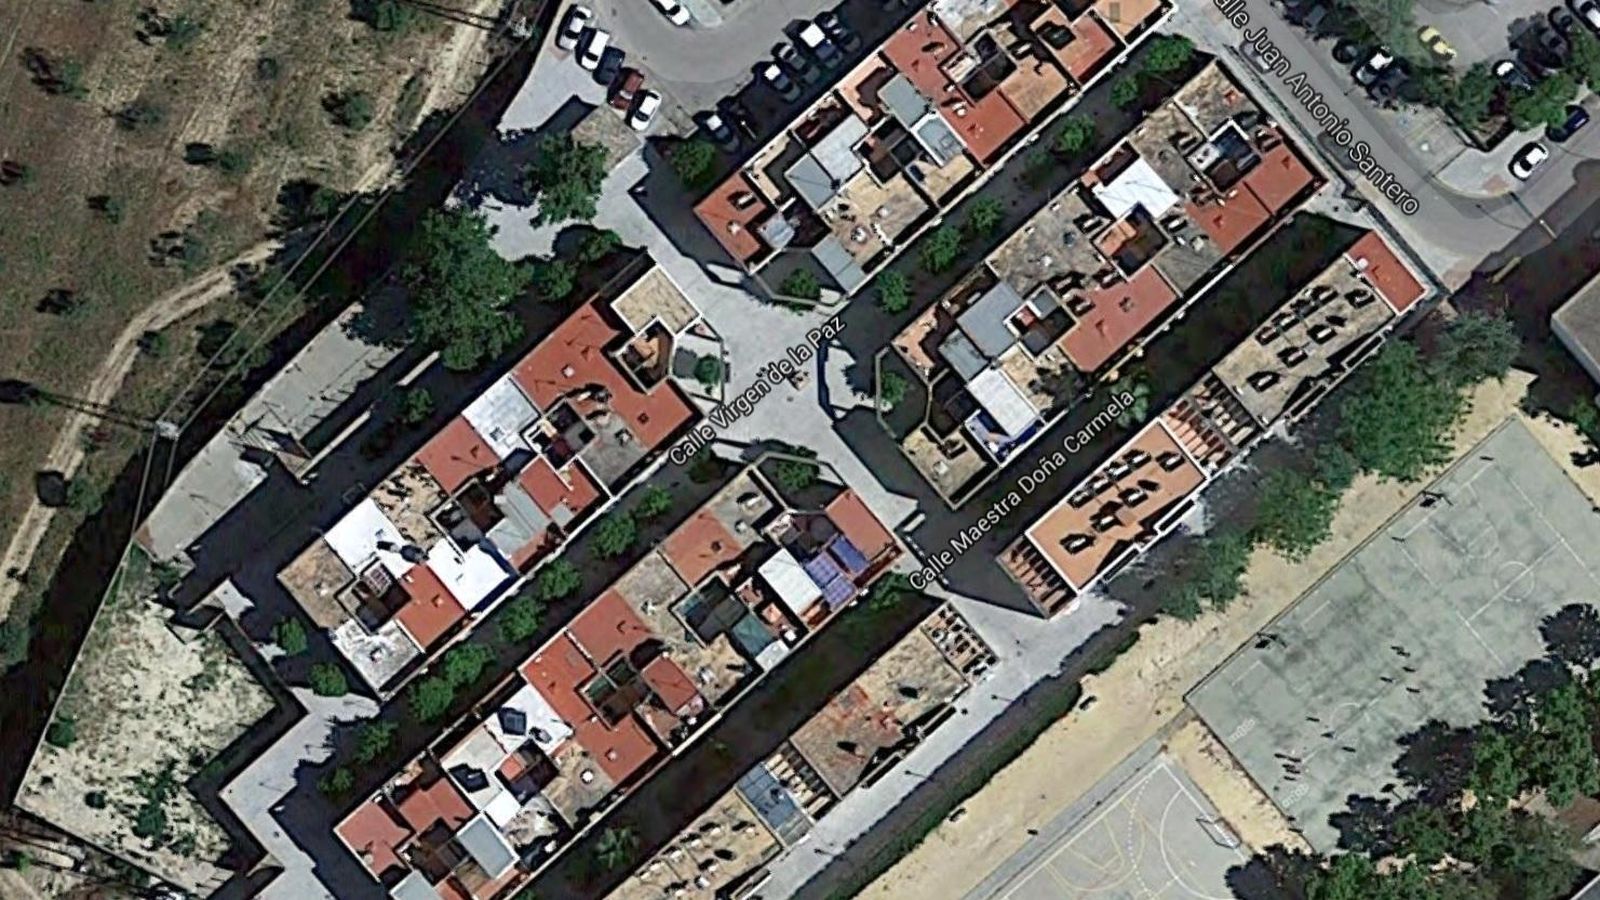 Foto: Calle Virgen de la Paz en Sanlúcar La Mayor, Sevilla (Google Maps)